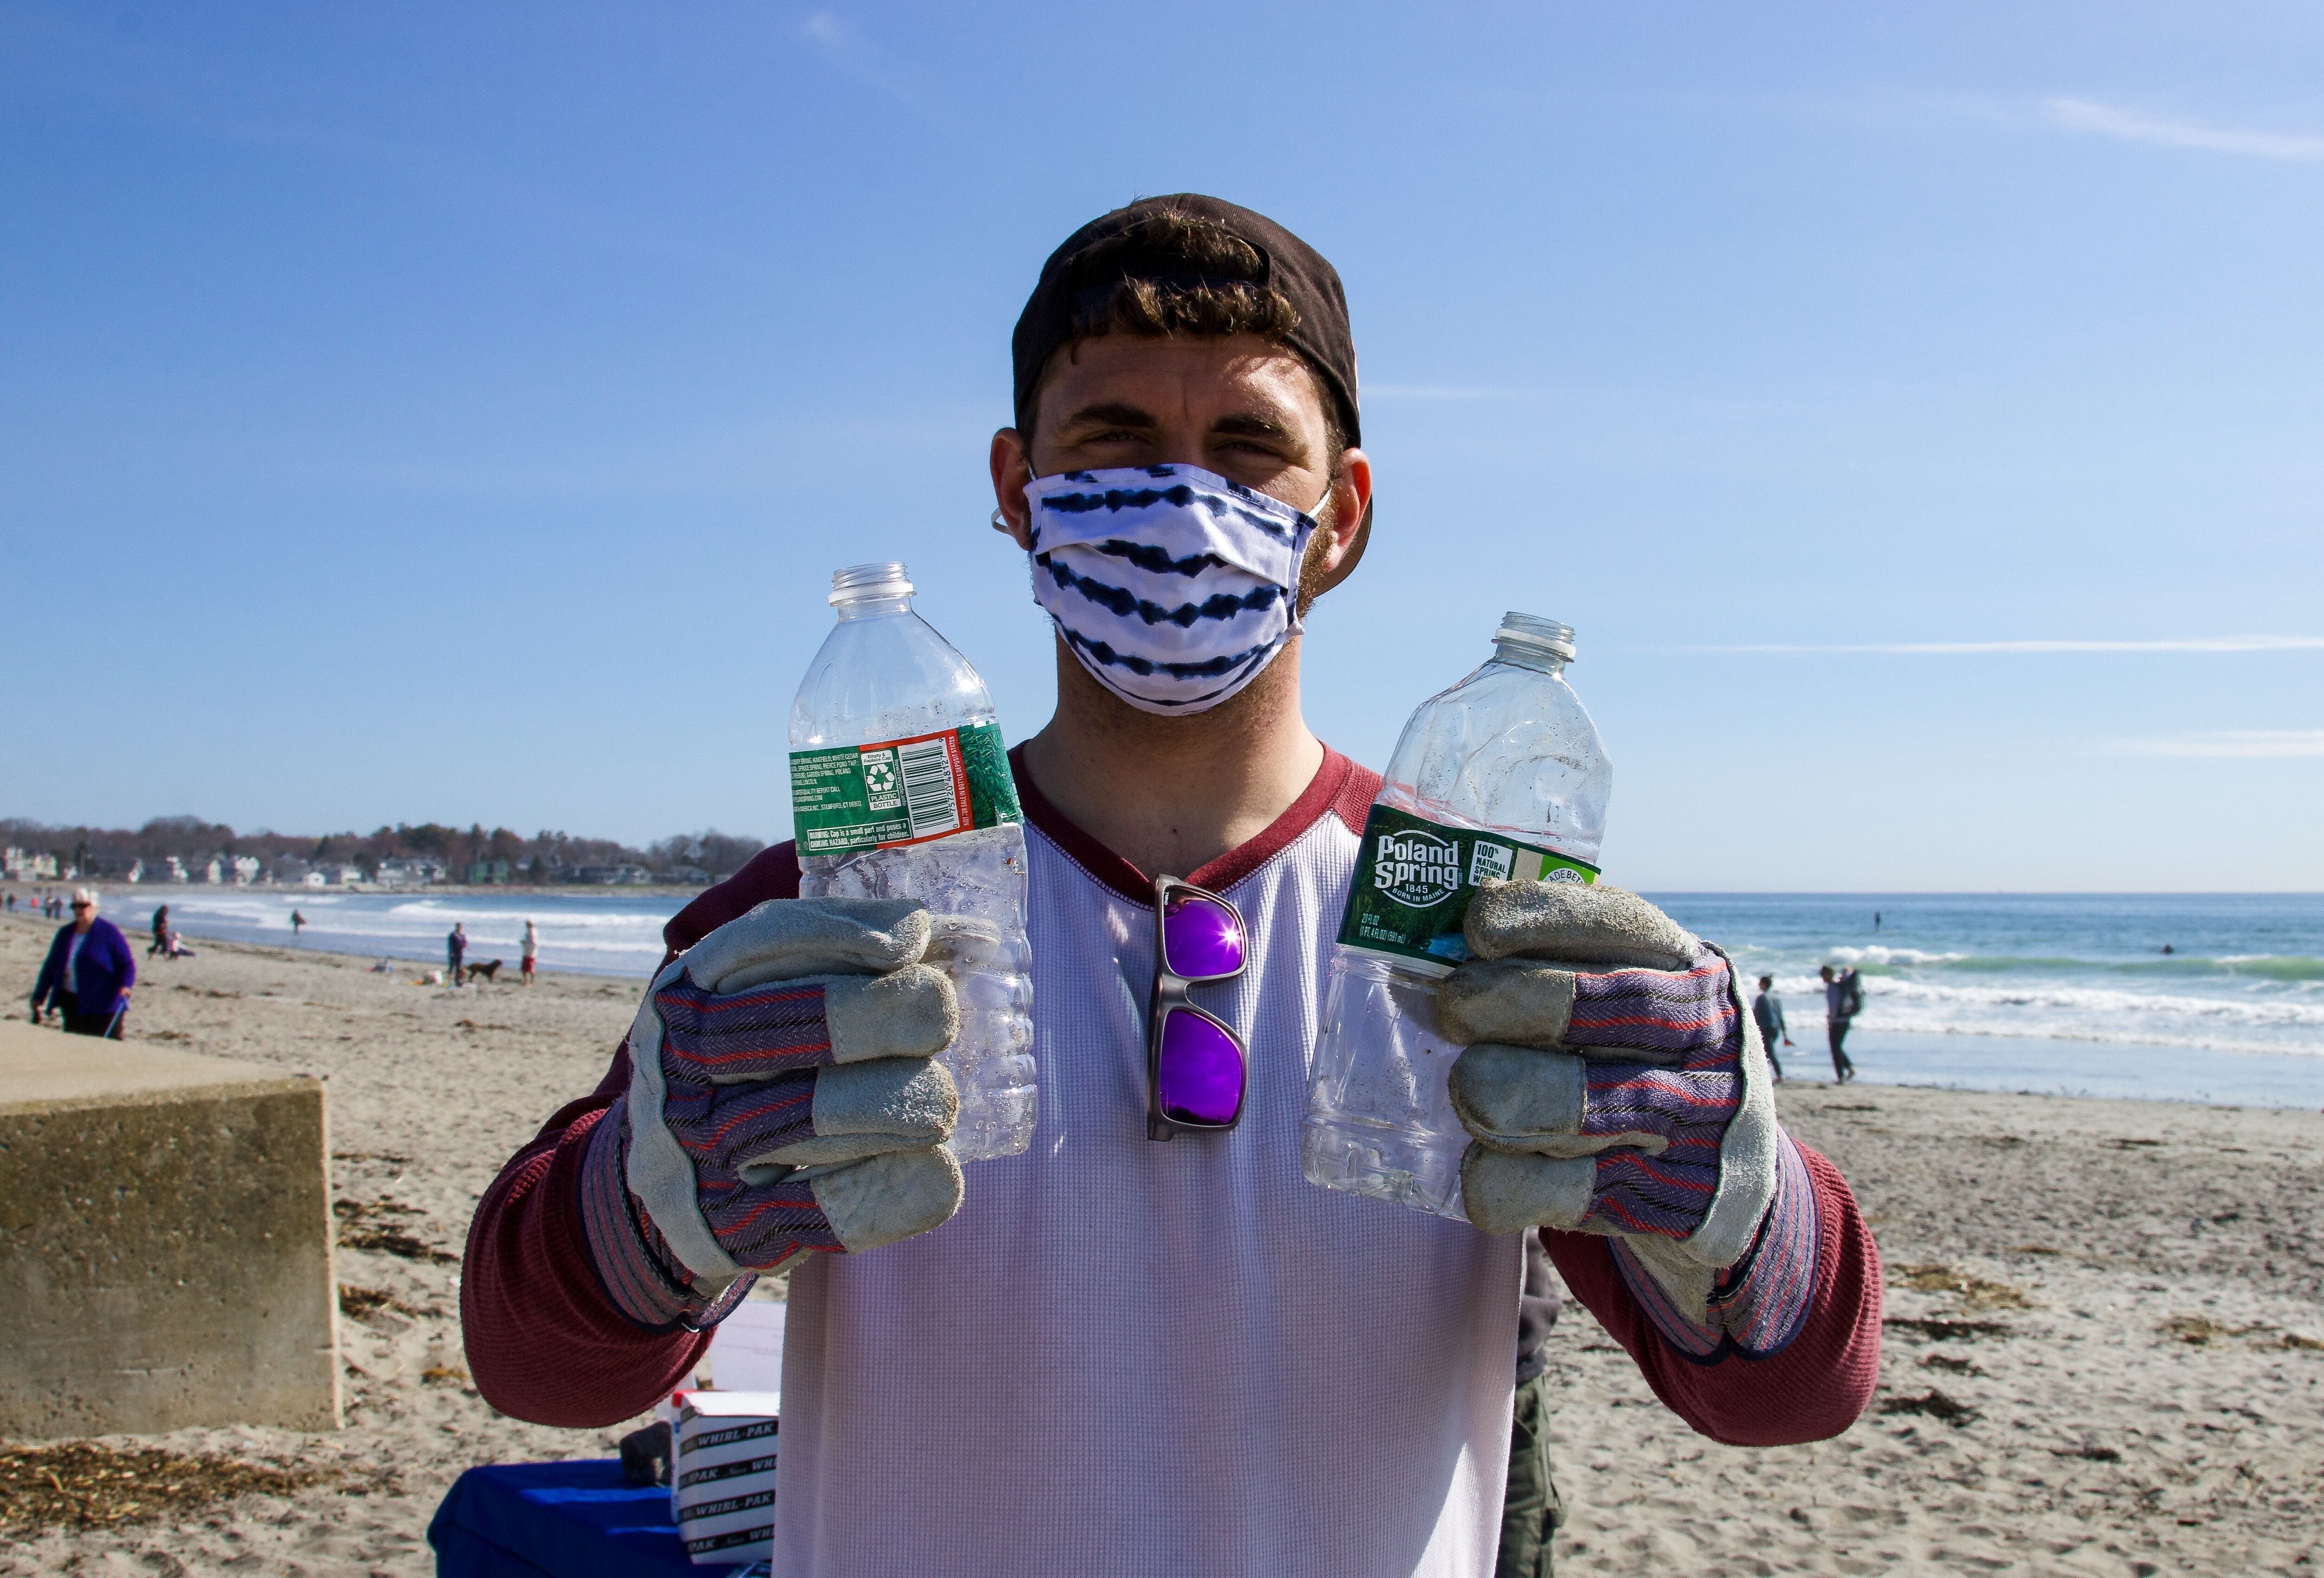 Reducción de consumo de plásticos en playas